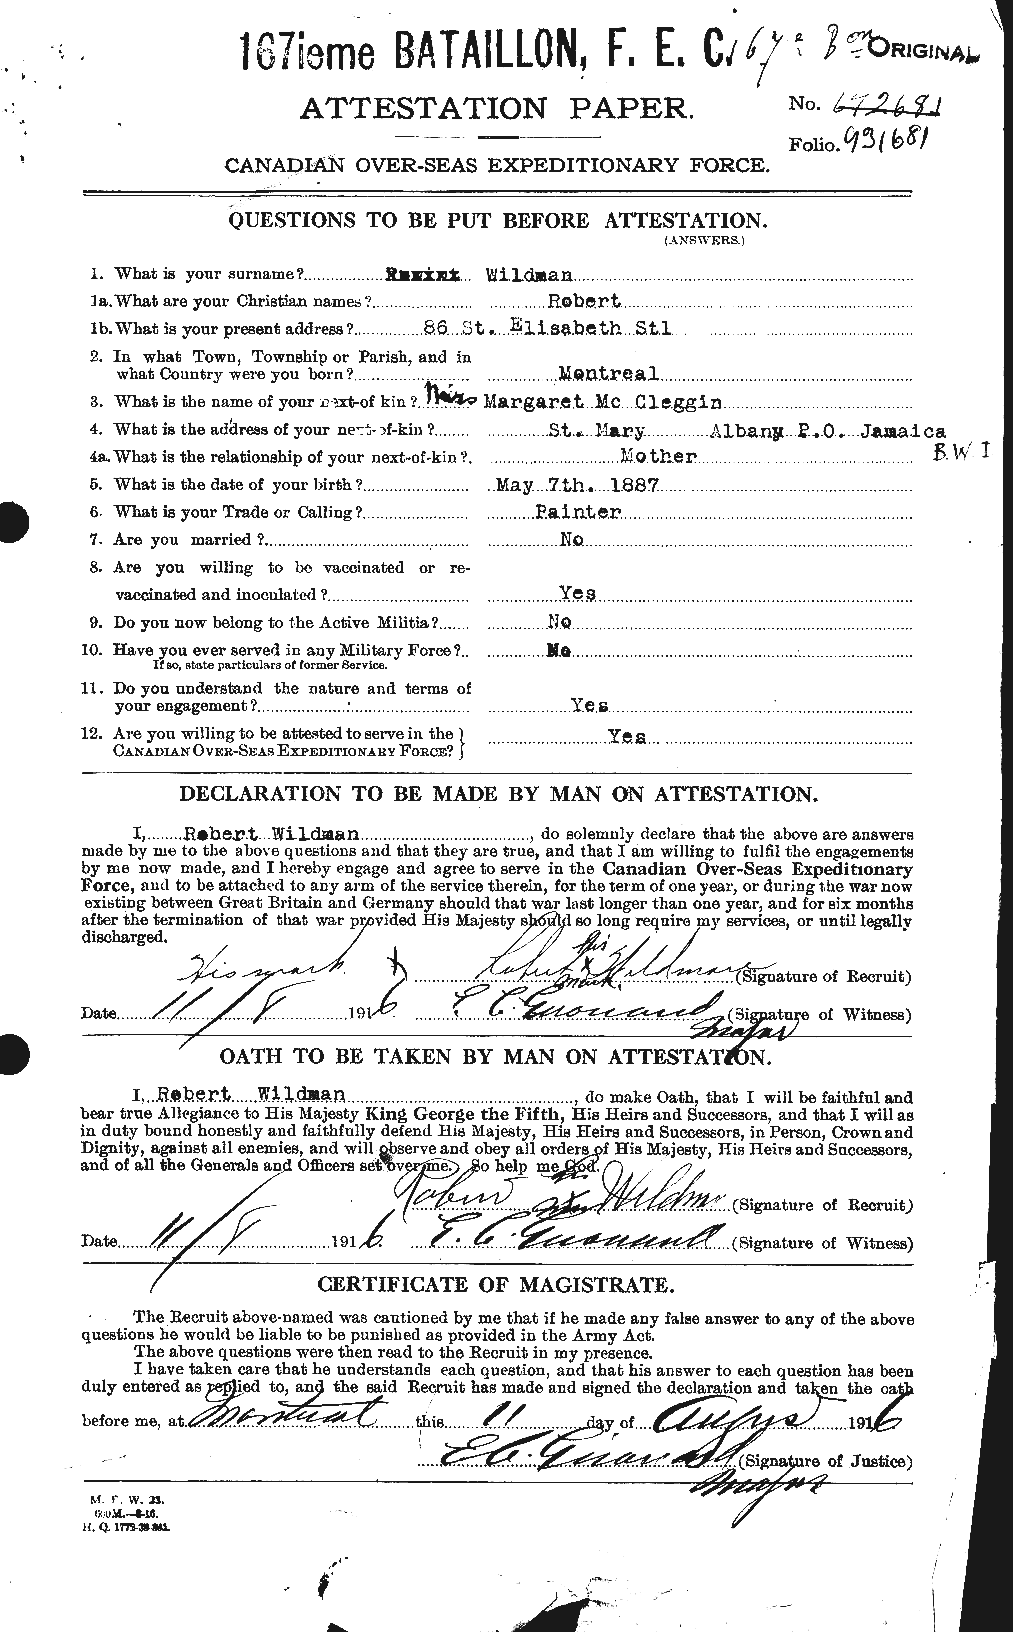 Dossiers du Personnel de la Première Guerre mondiale - CEC 680136a